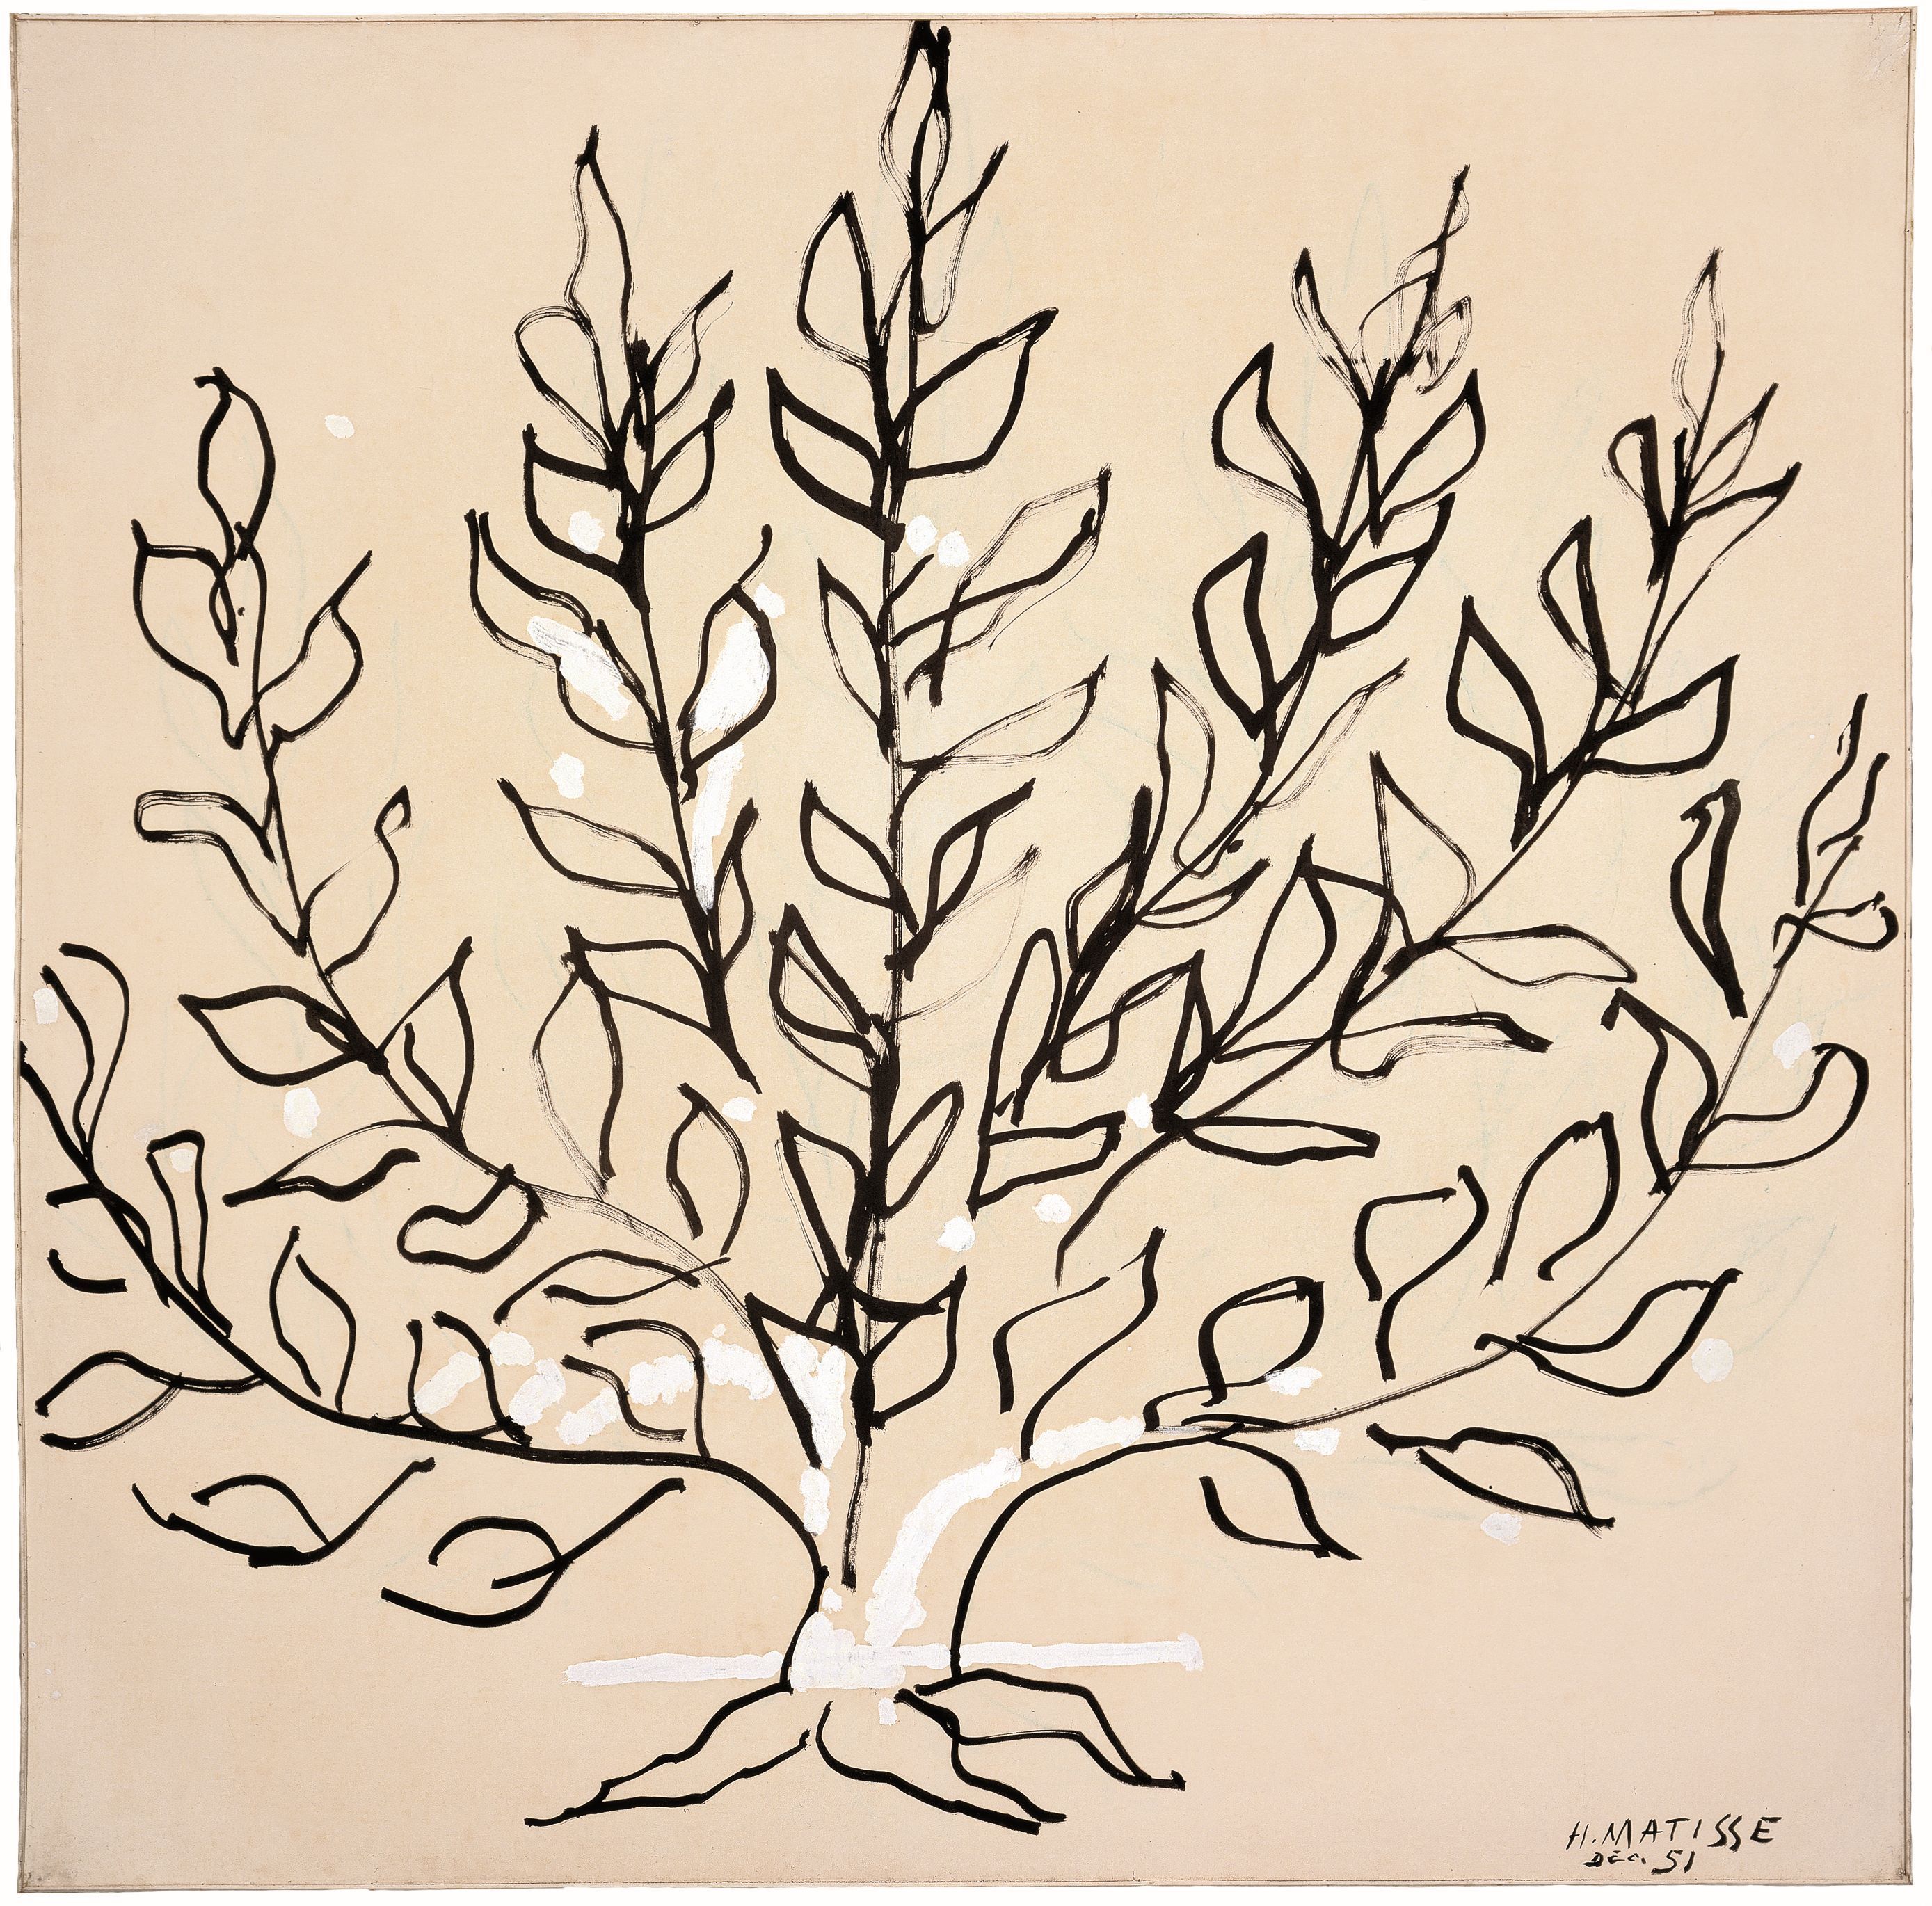 Henri Matisse, Le Buisson, 1951, encre et gouache sur papier, 149 x 149 cm.